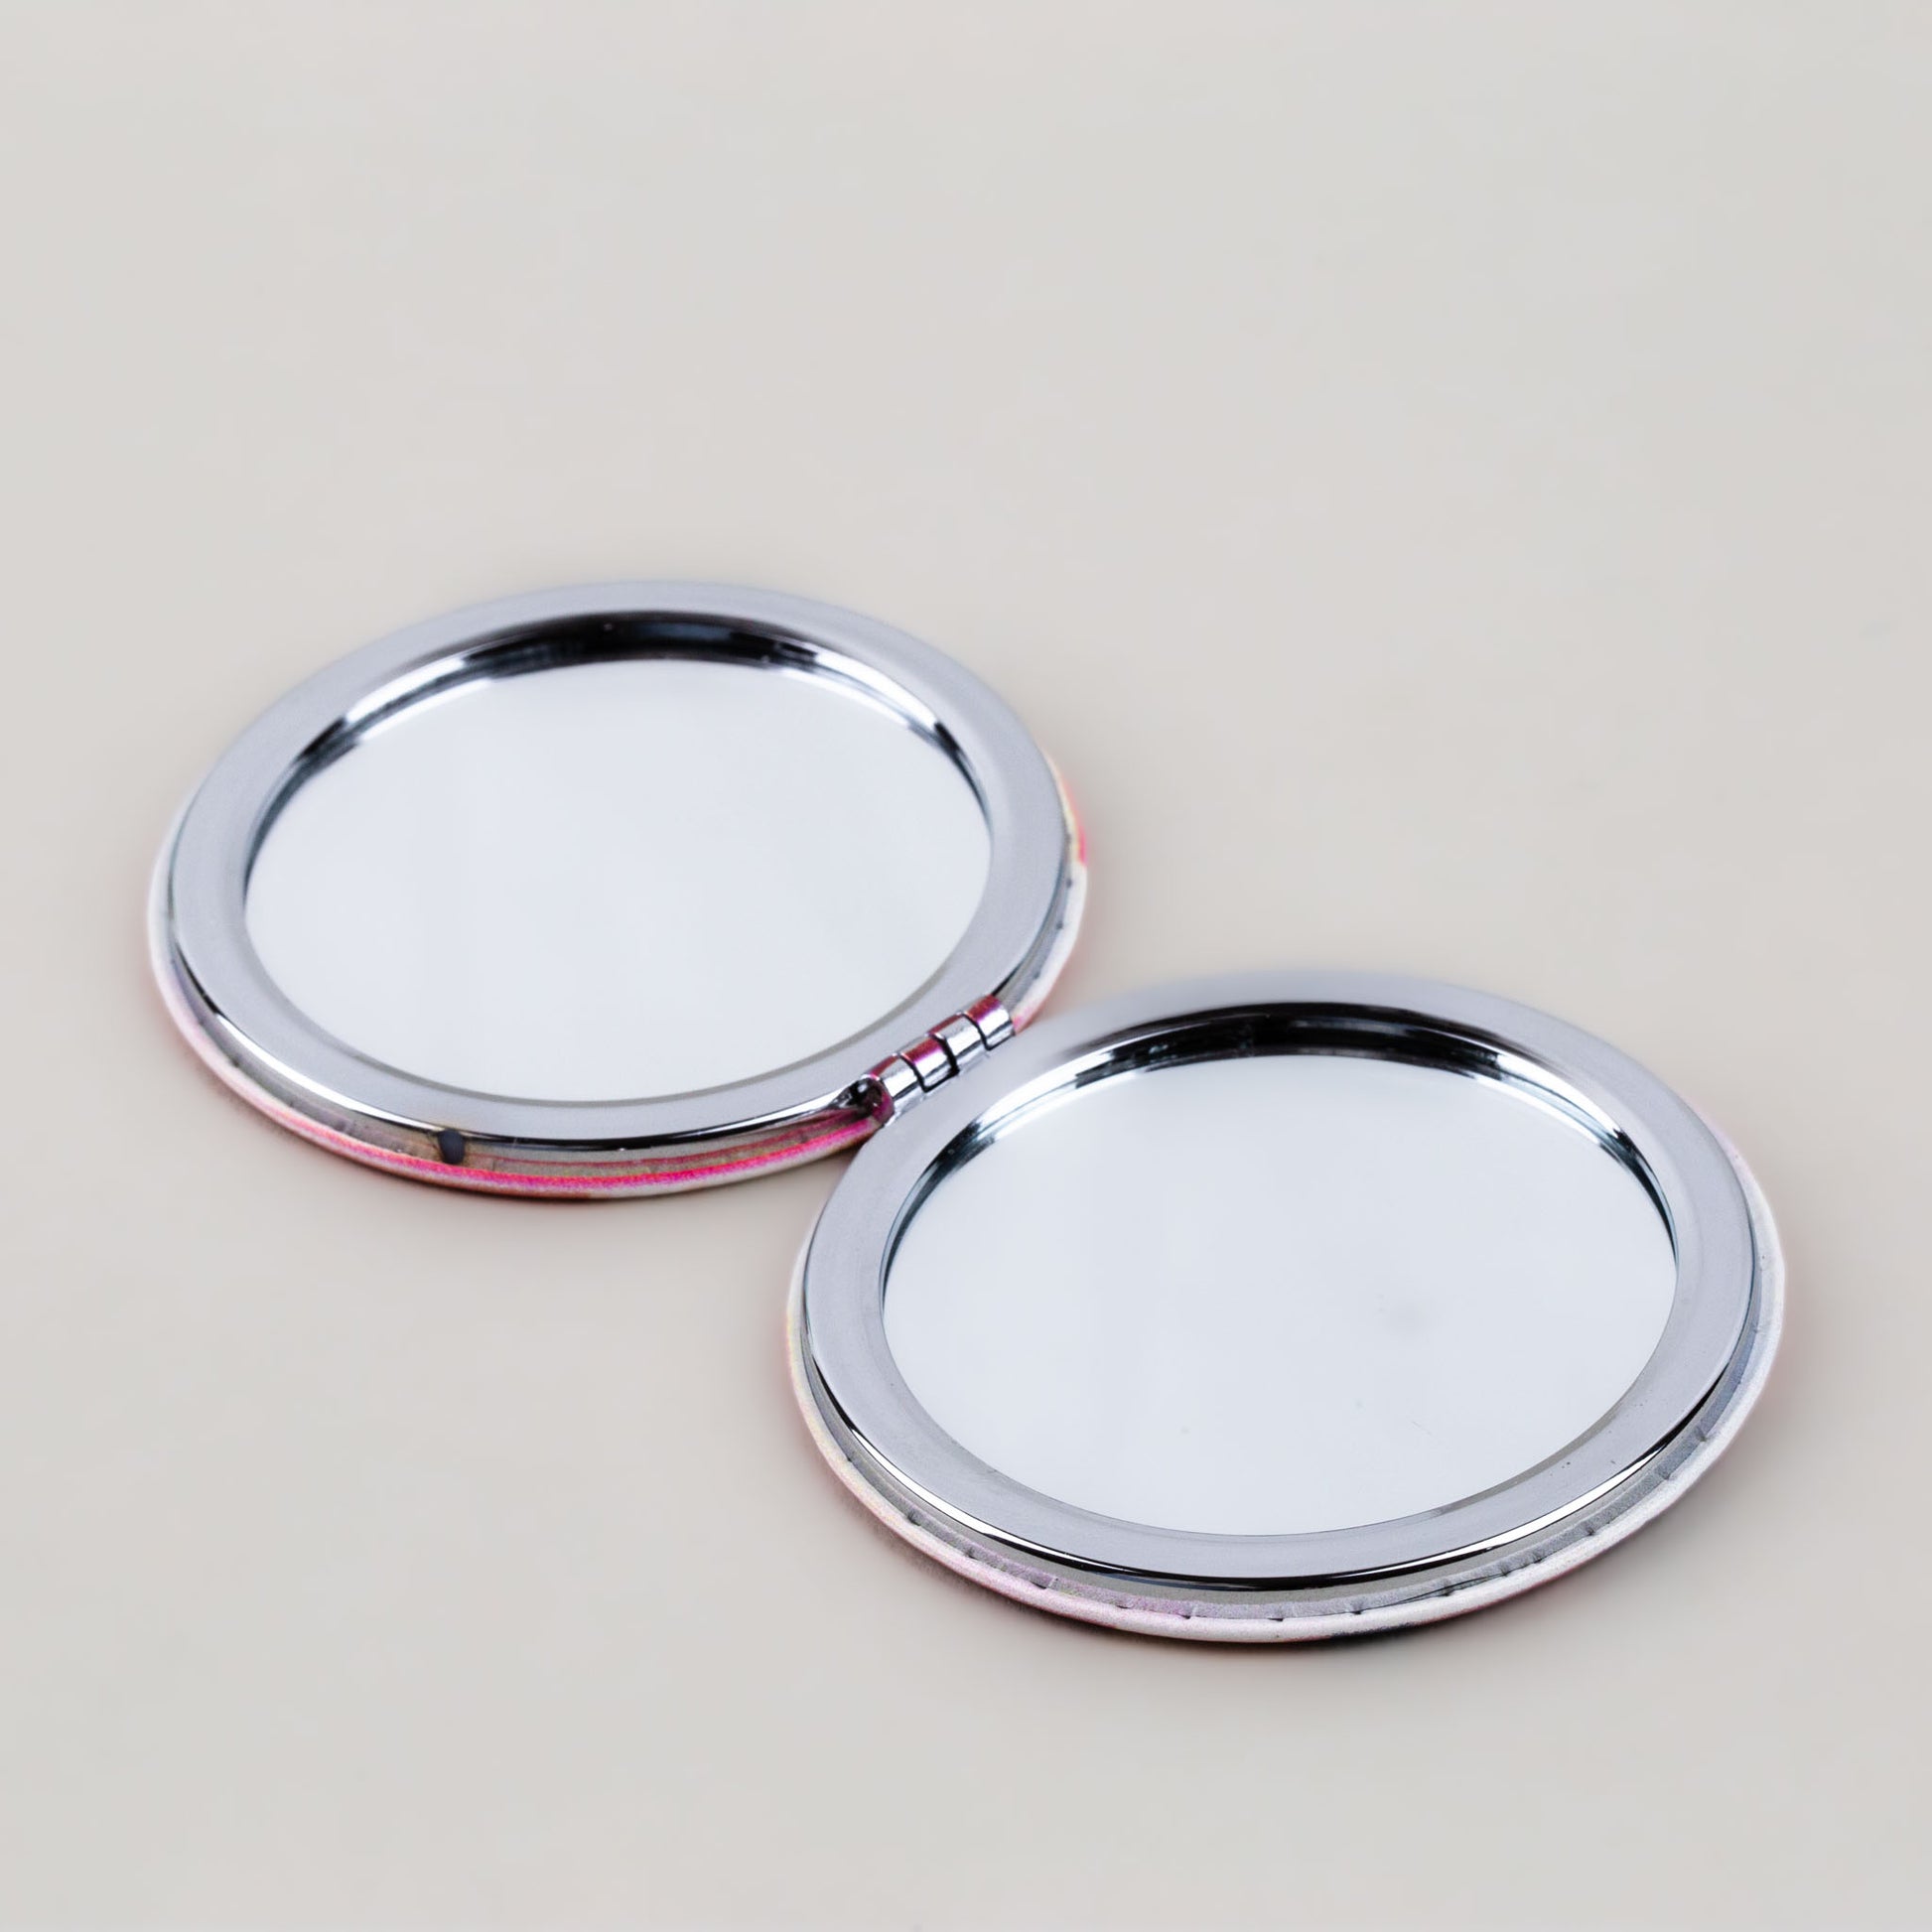 Oglindă de poșetă, formă rotundă cu 2 părți, model love shopping - Exclusive